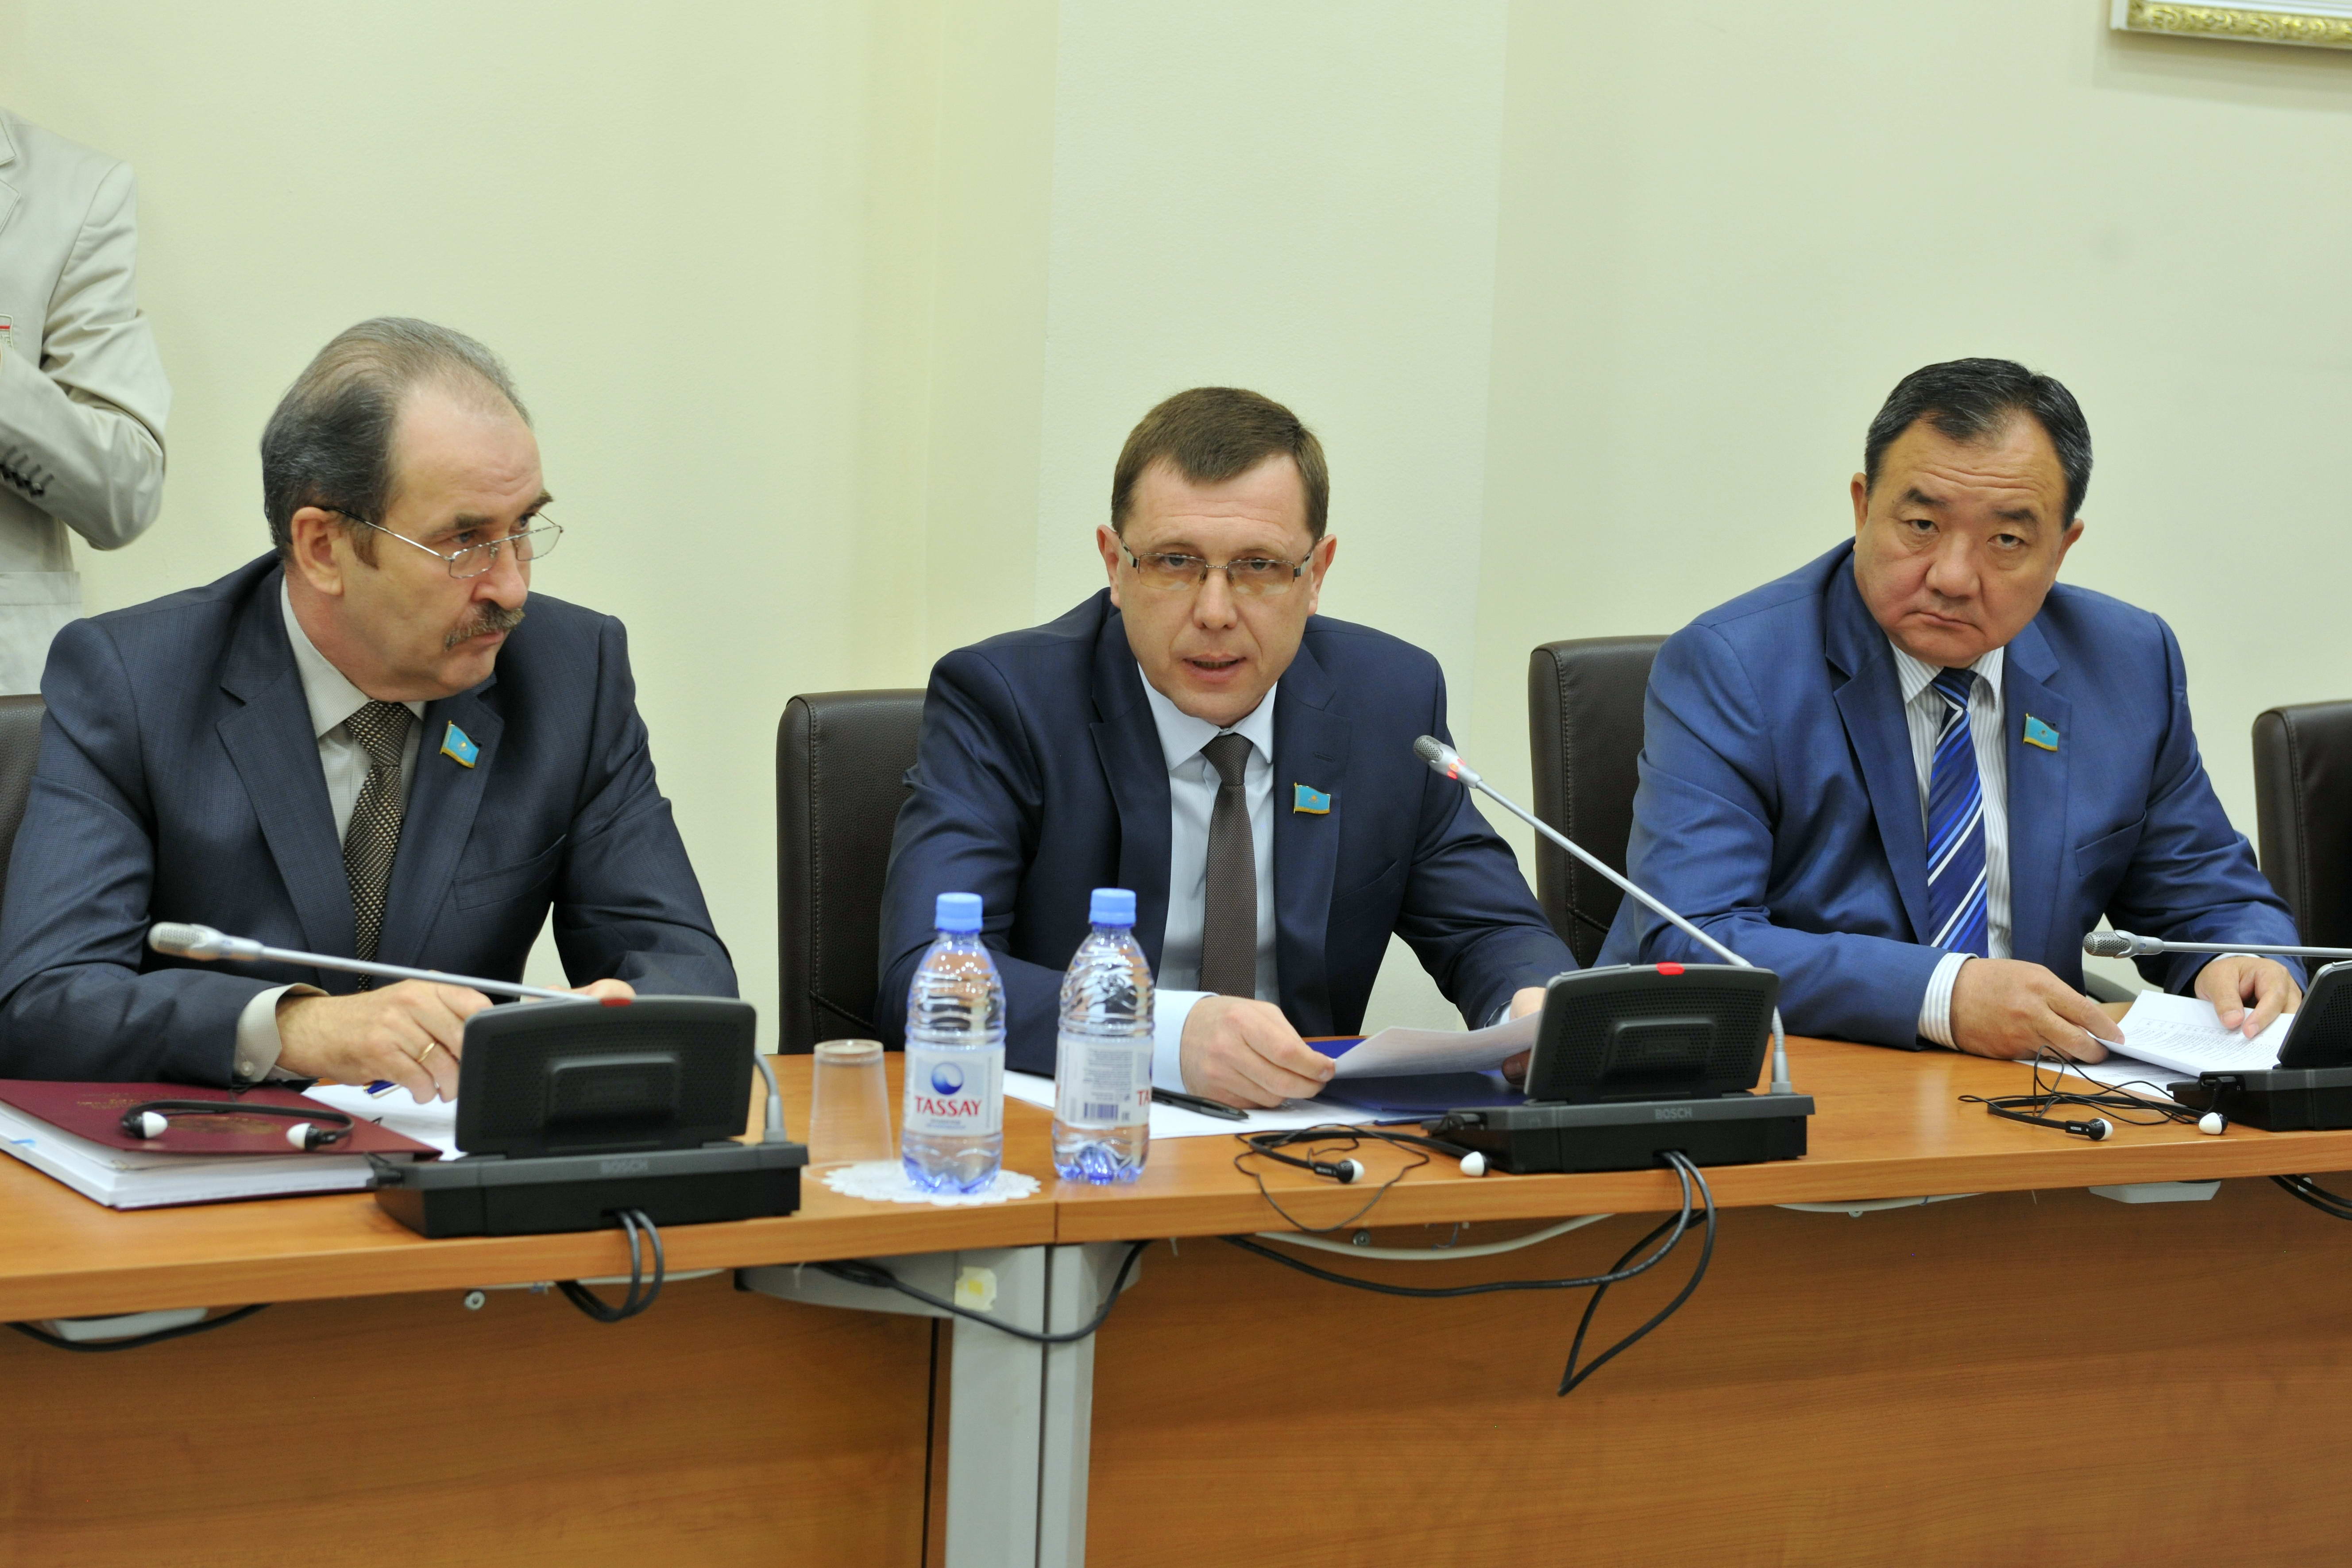 Участие депутата С. Симонова в рассмотрении законопроекта «О коллекторской деятельности»